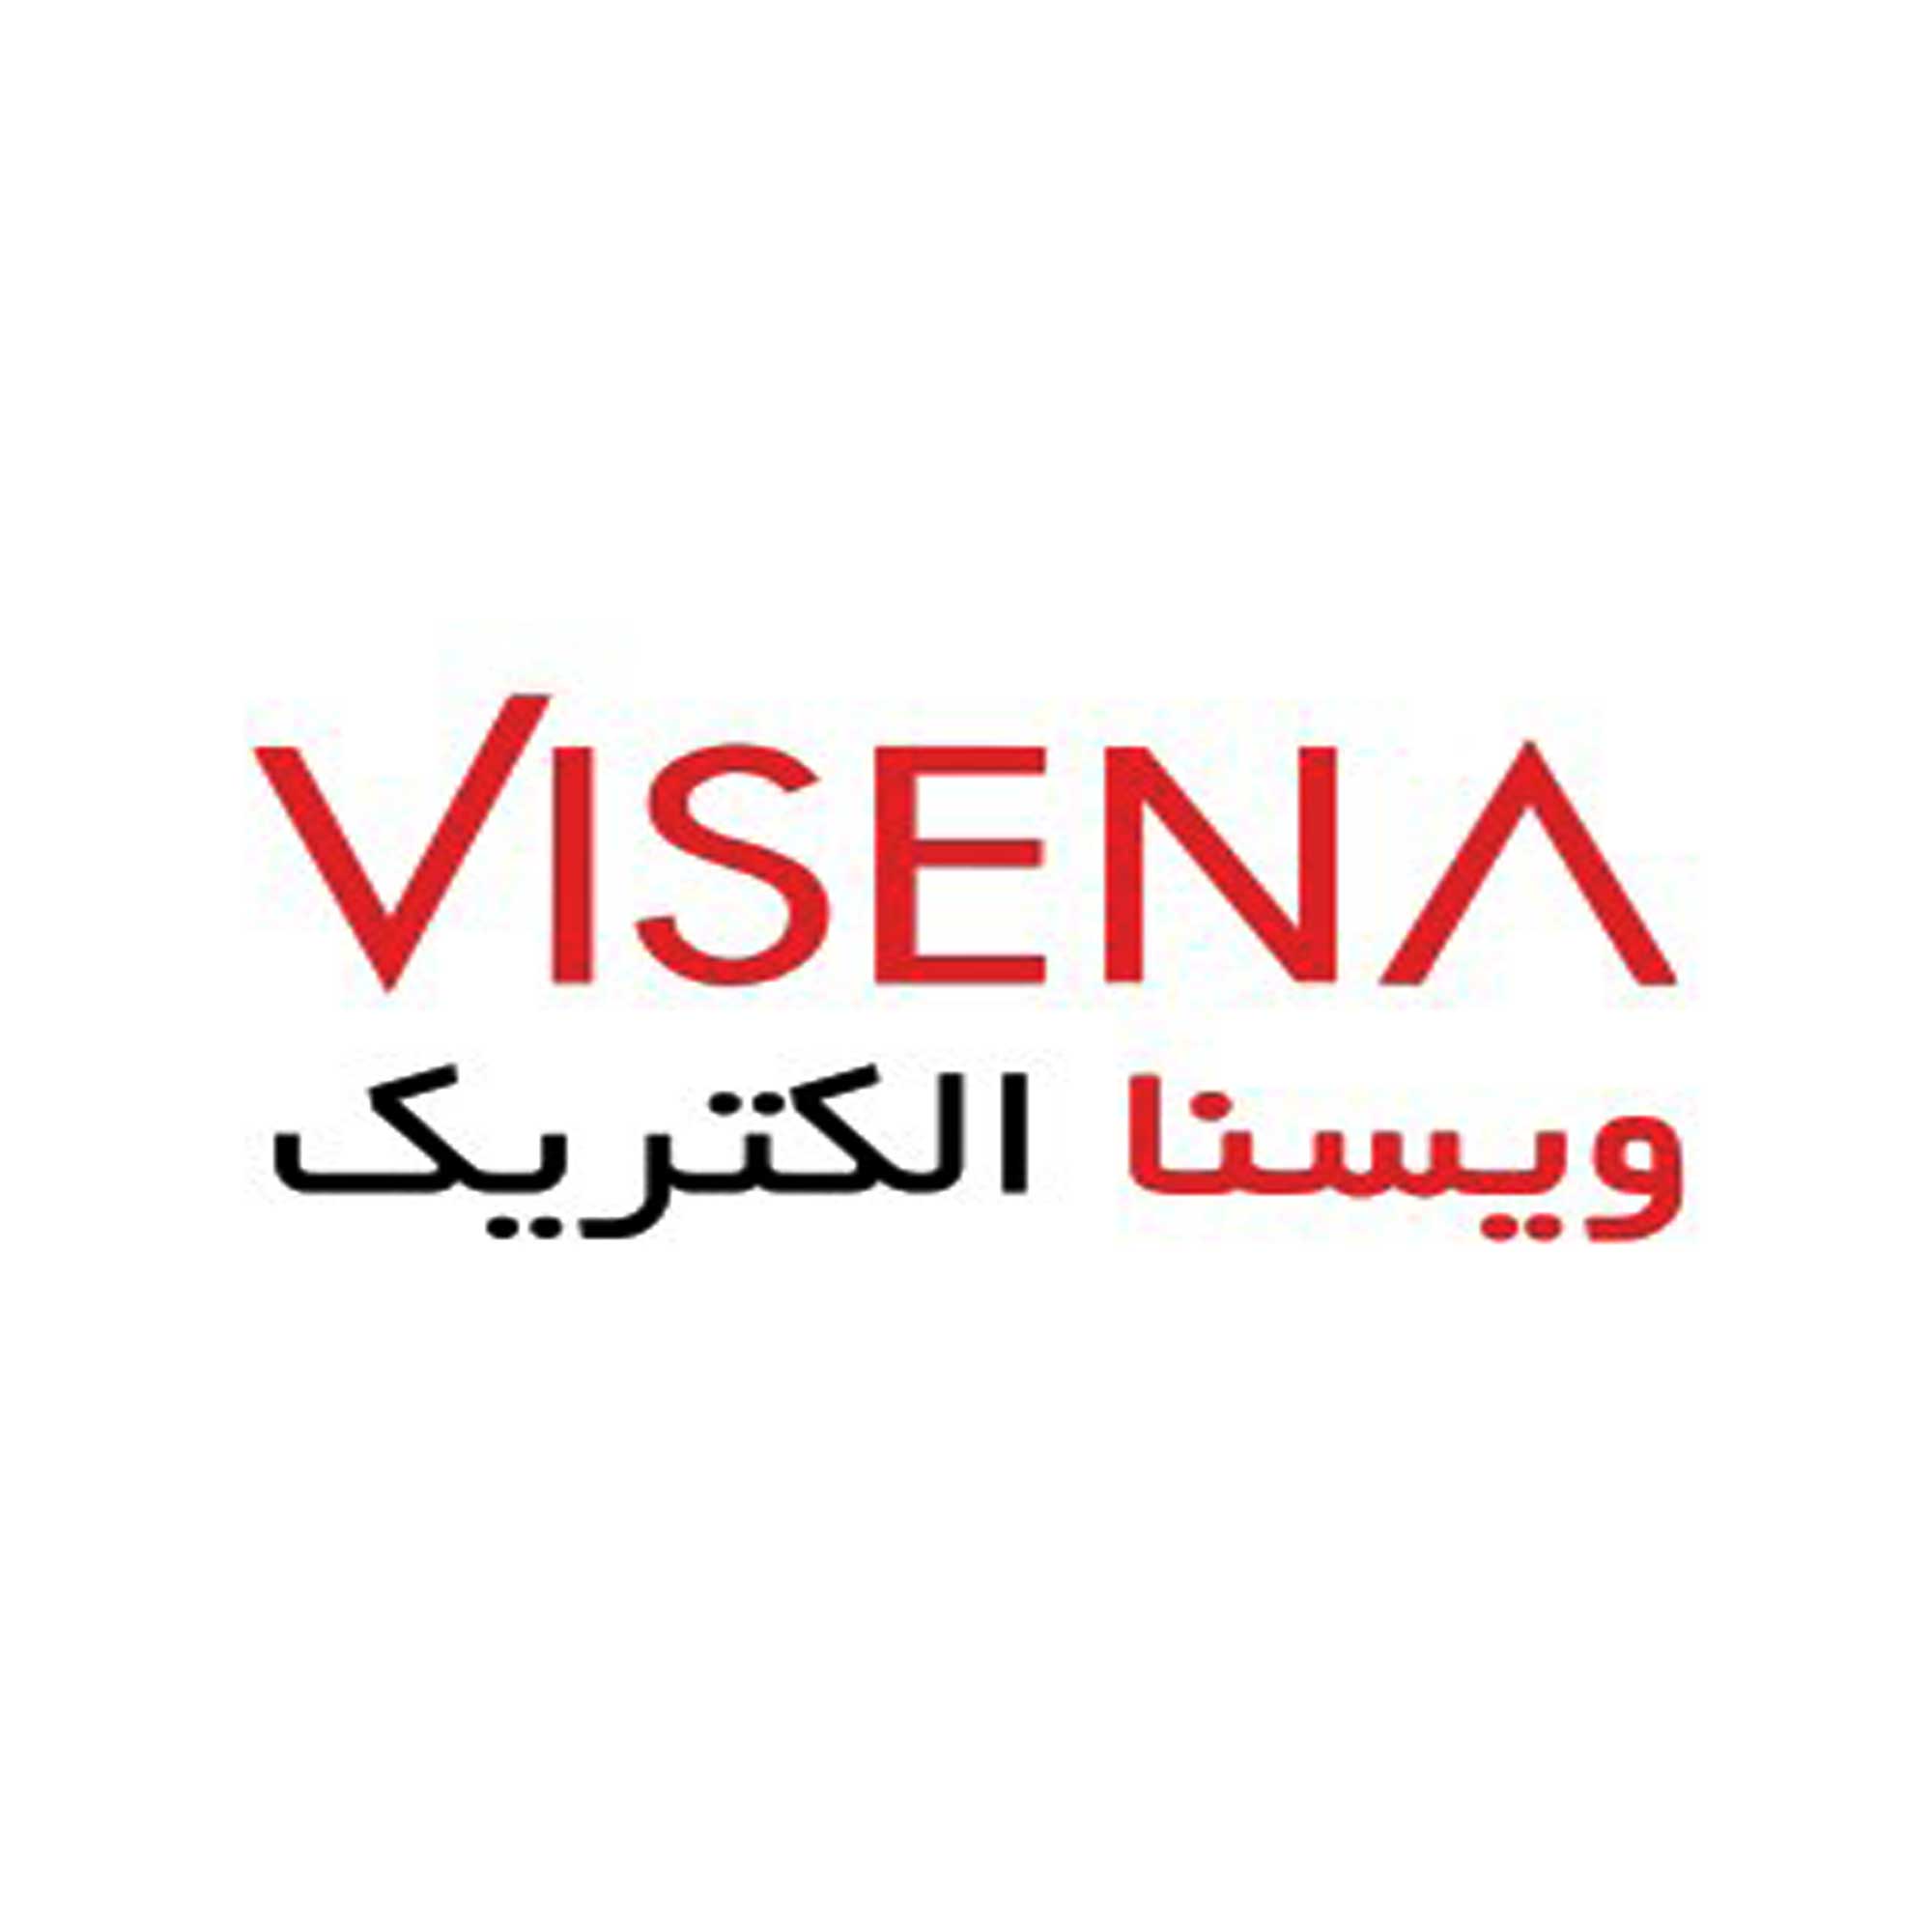 ویسنا VISENA | نماینده رسمی فروش محصولات ویسنا